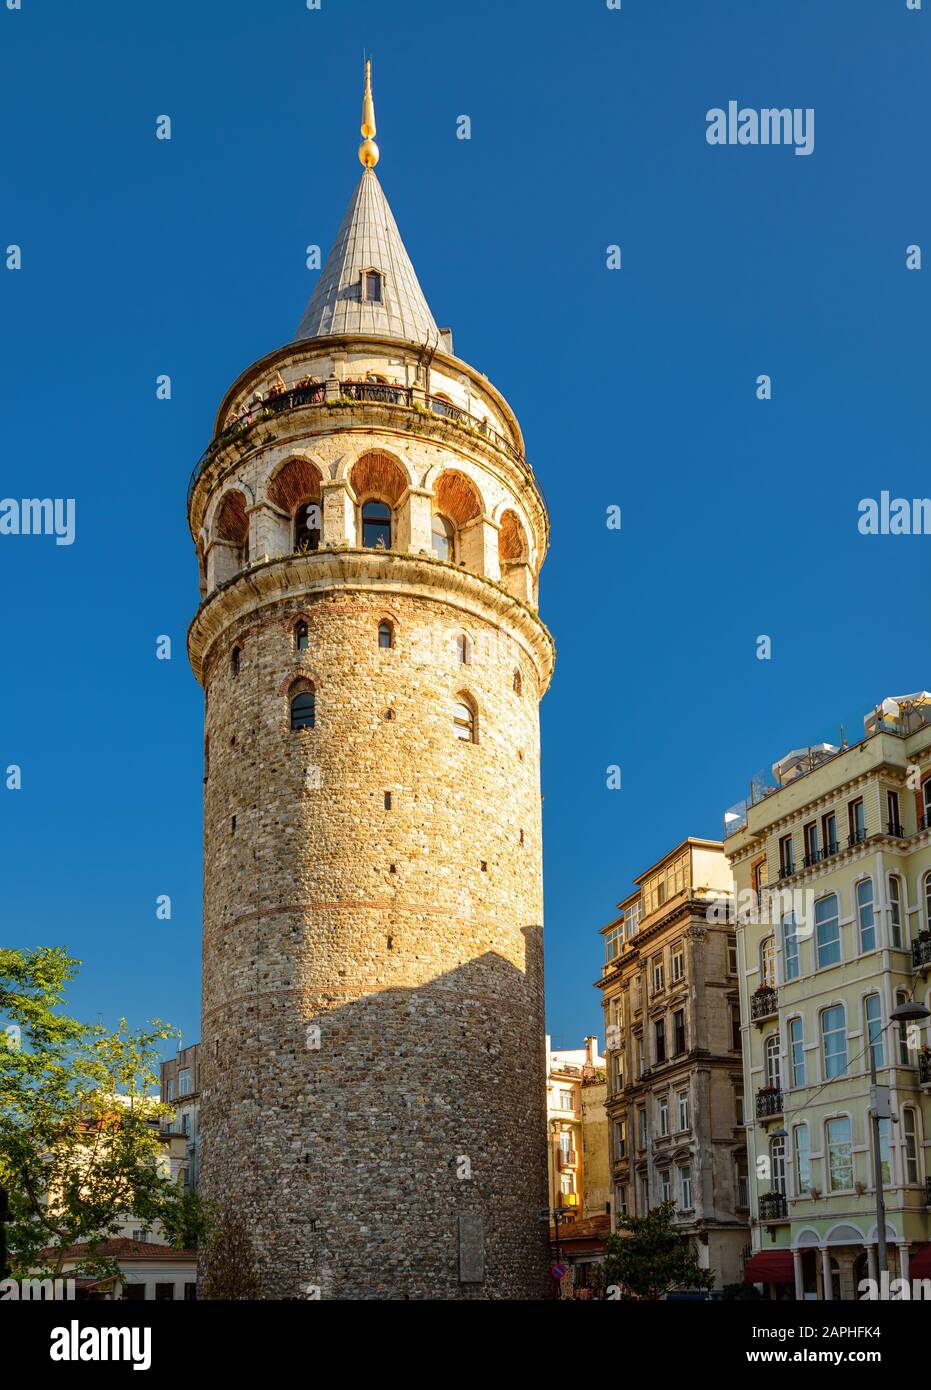 Galata-Turm im Sommer, Istanbul, Türkei. Uralter Turm im Galata-Viertel von Istanbul. Schöner Blick auf das berühmte Wahrzeichen von Istanbul. Alter Archit Stockfoto